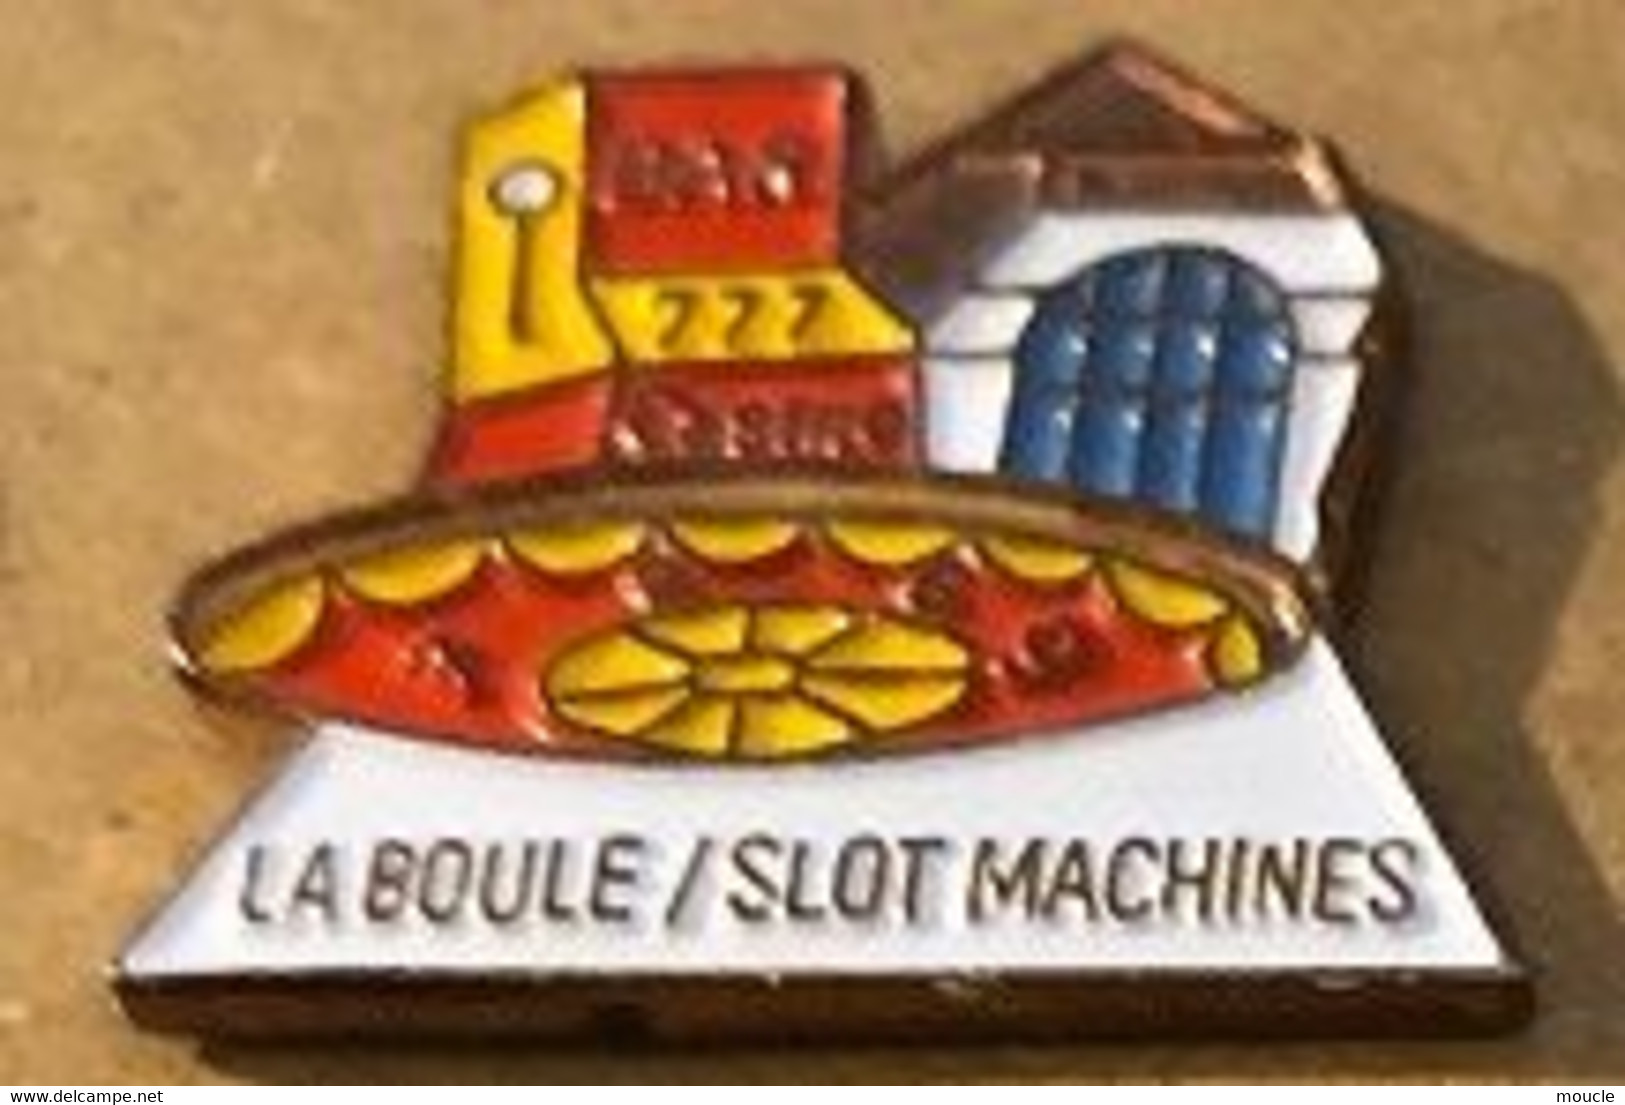 LA BOULE / SLOT MACHINES - BANDIT MANCHOT - CASINO - ROULETTE  - BAR - MACHINE A SOUS - MONEY - ARGENT - GELD -    (16) - Juegos